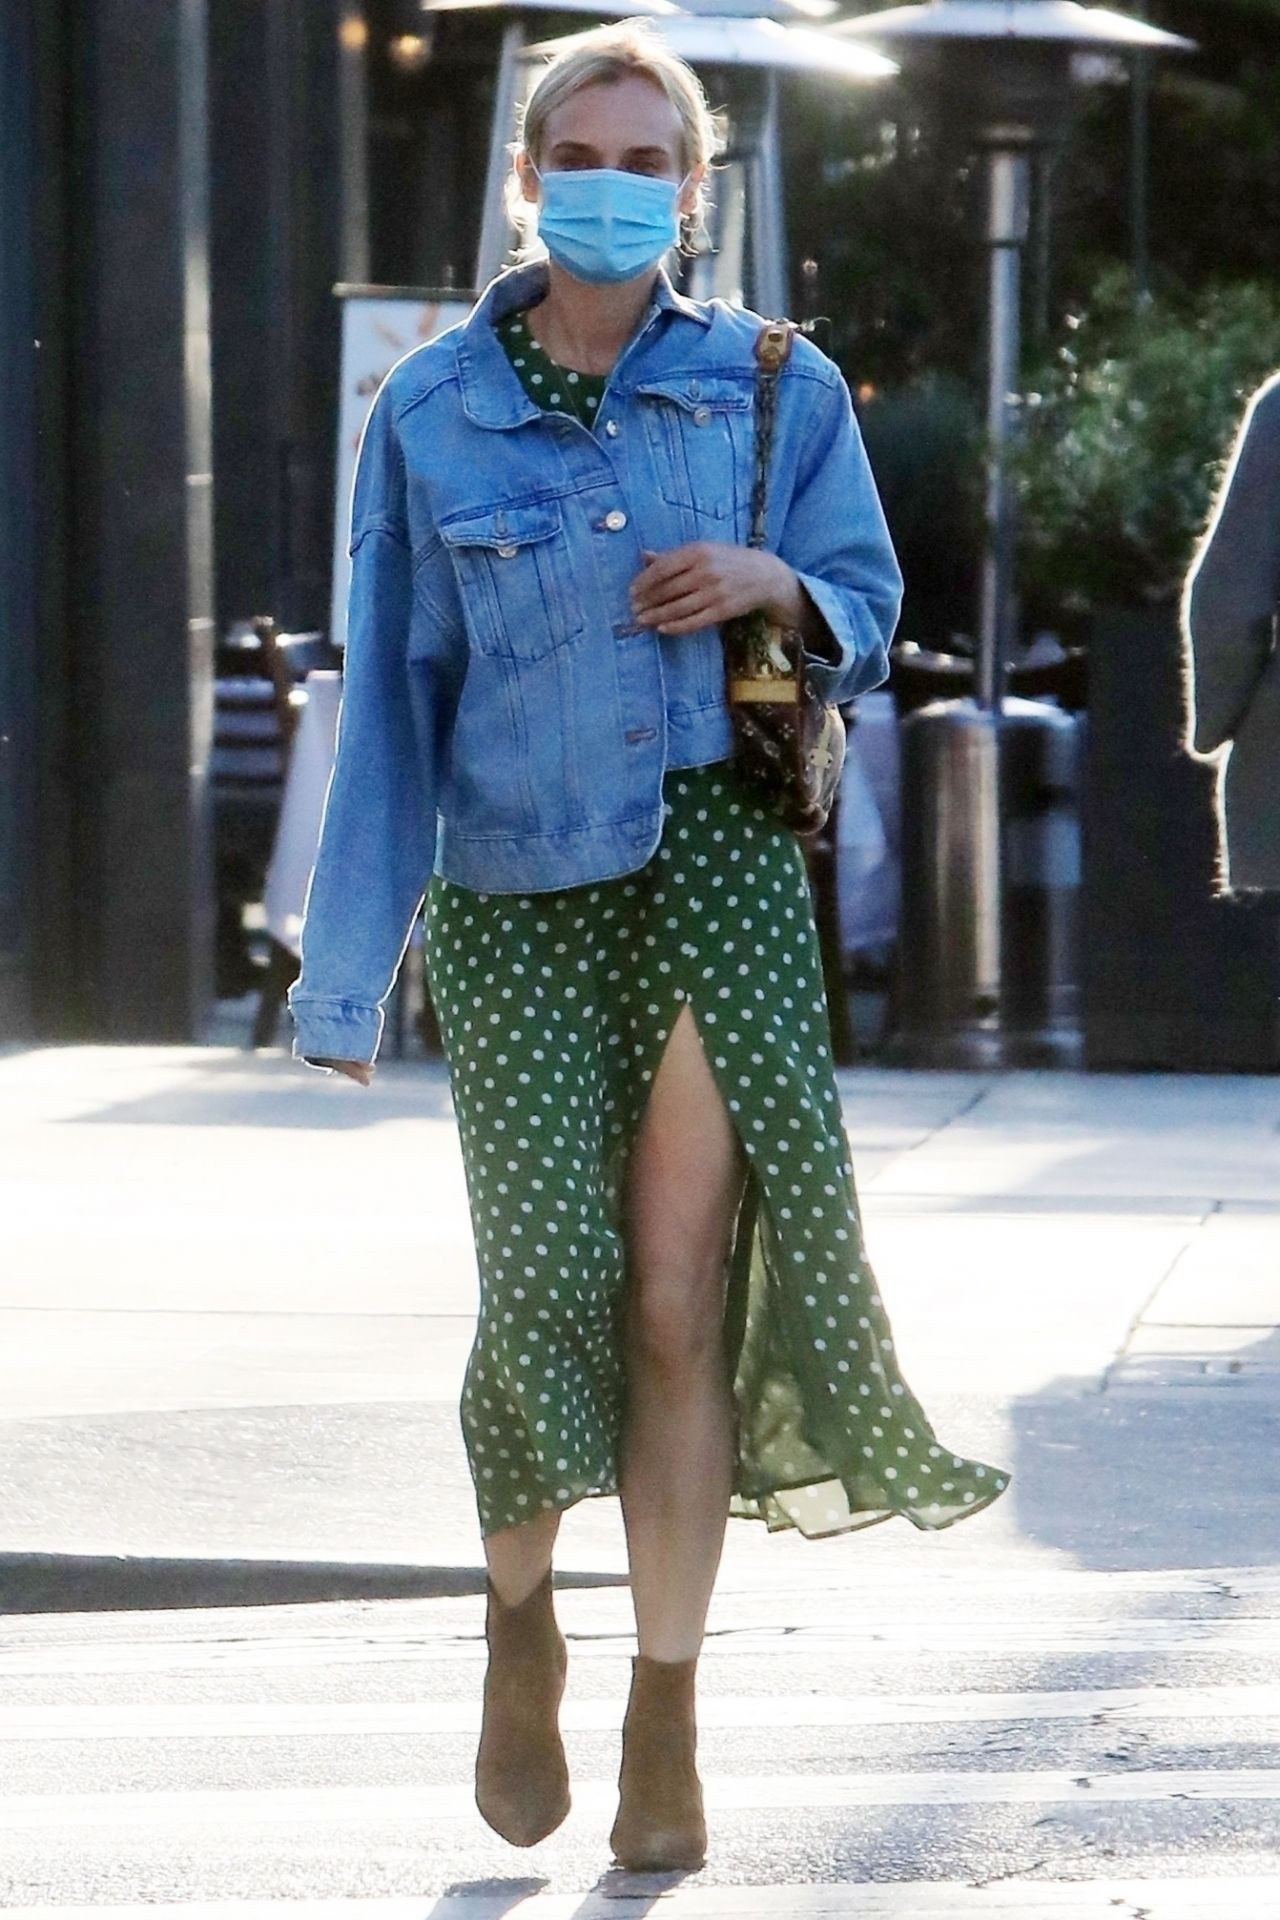 Diane Kruger West Hollywood July 23, 2020 – Star Style